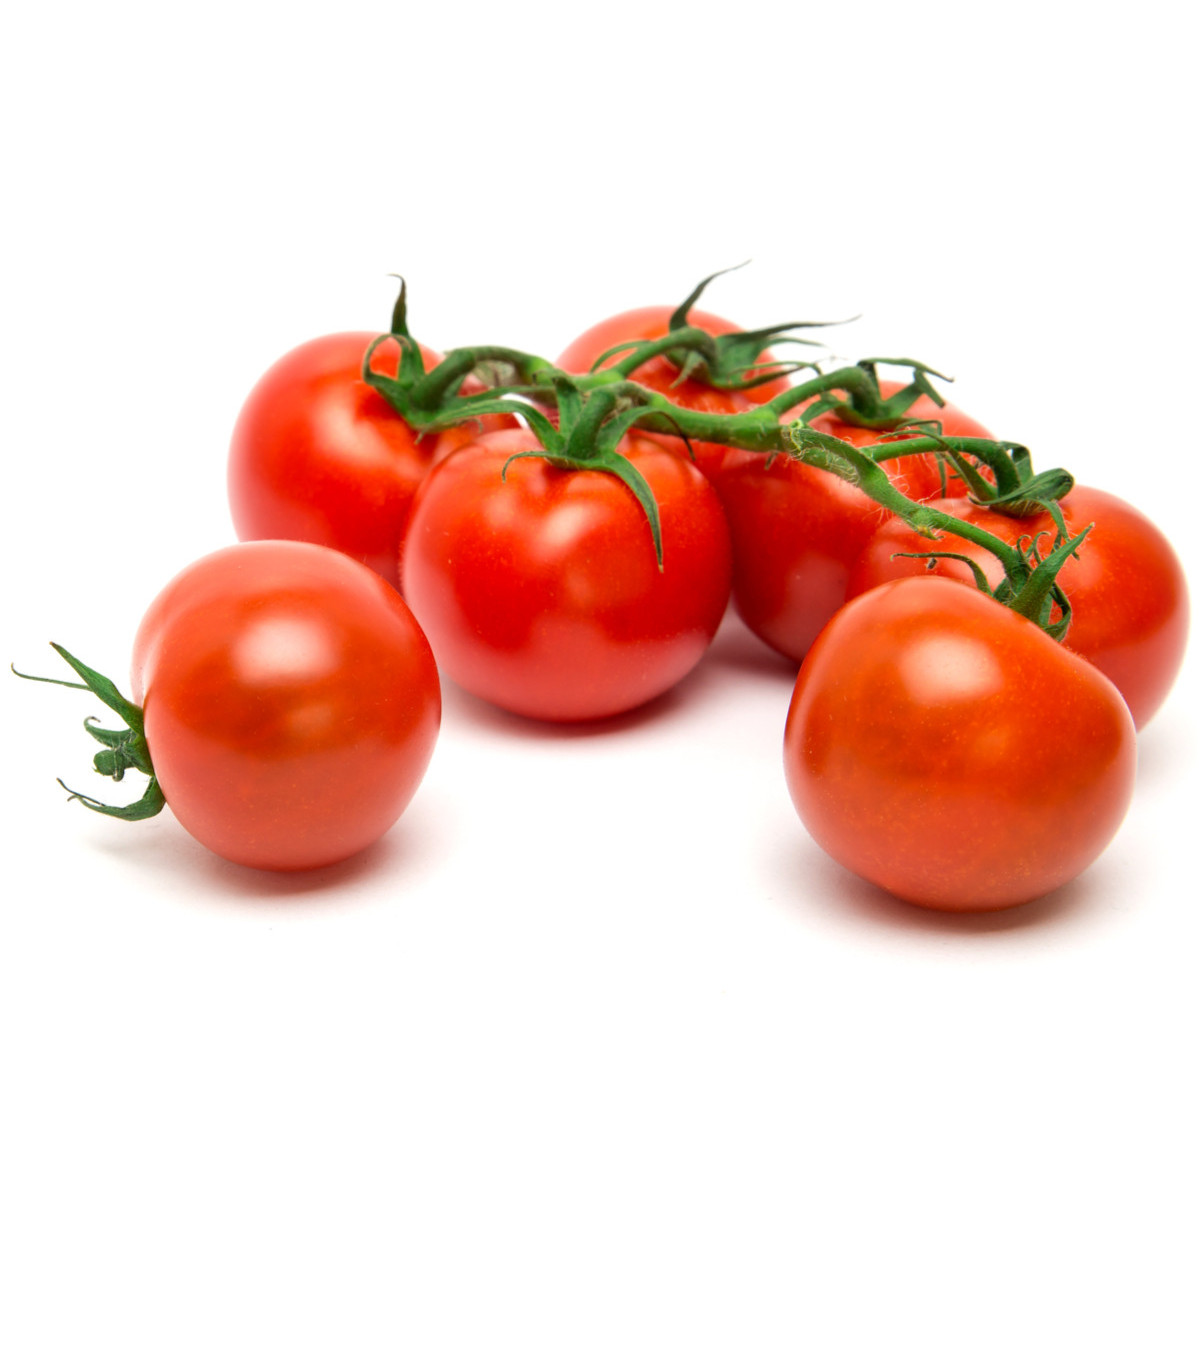 Rajče Matina - Solanum lycopersicum - osivo rajčat - 20 ks